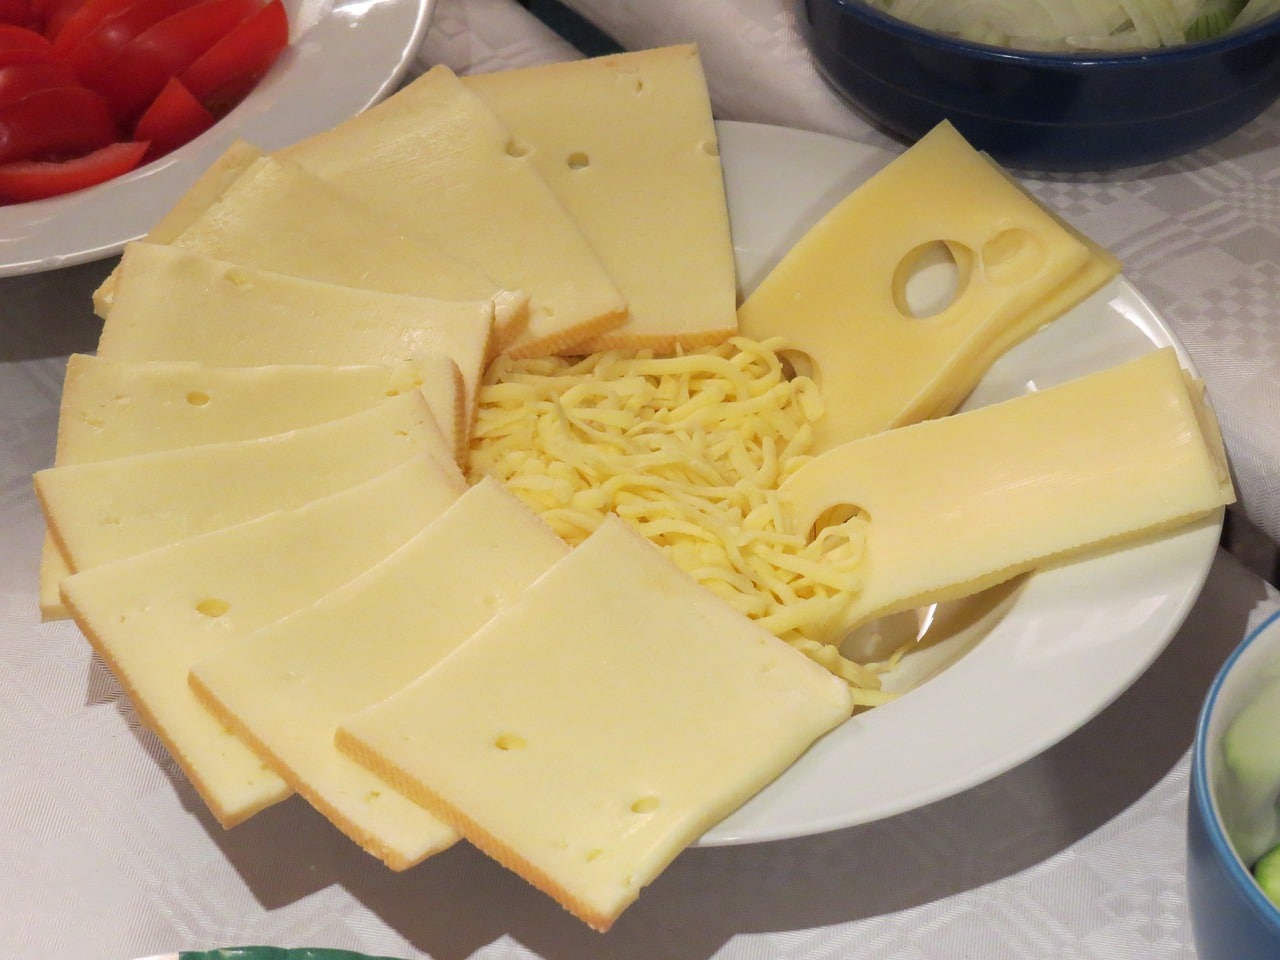 Tranches de fromage à raclette dans une assiette